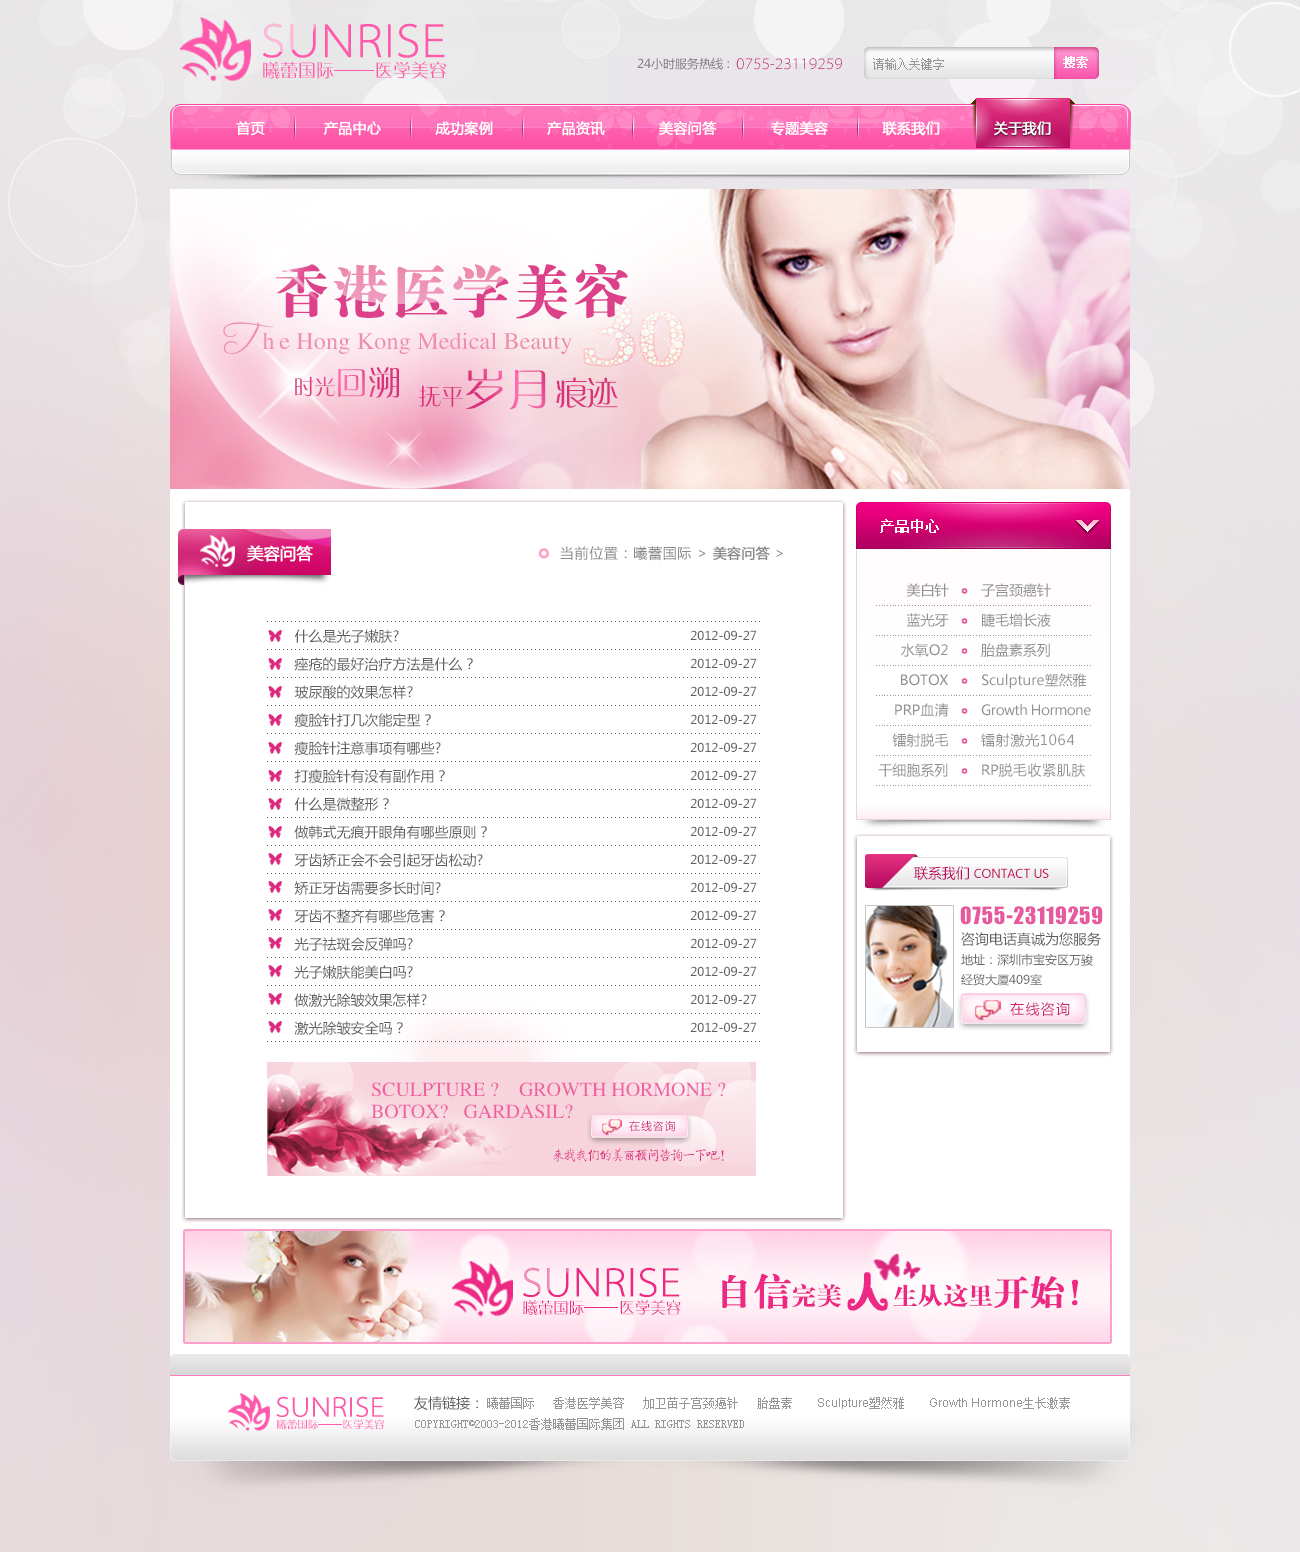 醫療美容公司網站設計圖1